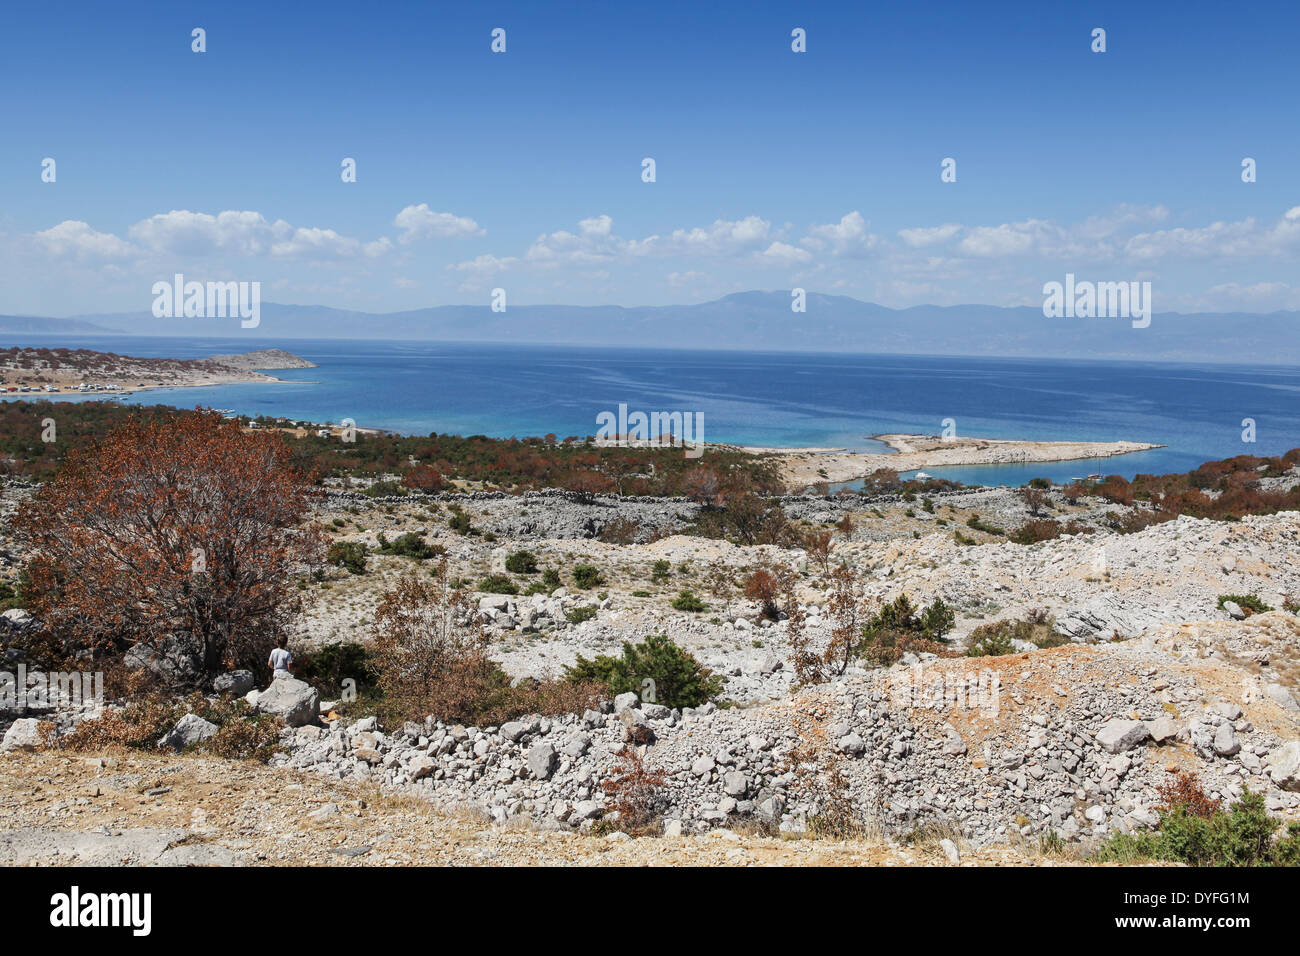 Mare Adriatico e montuoso costa della Croazia da l'isola di Krk, la più grande isola croata. Foto Stock